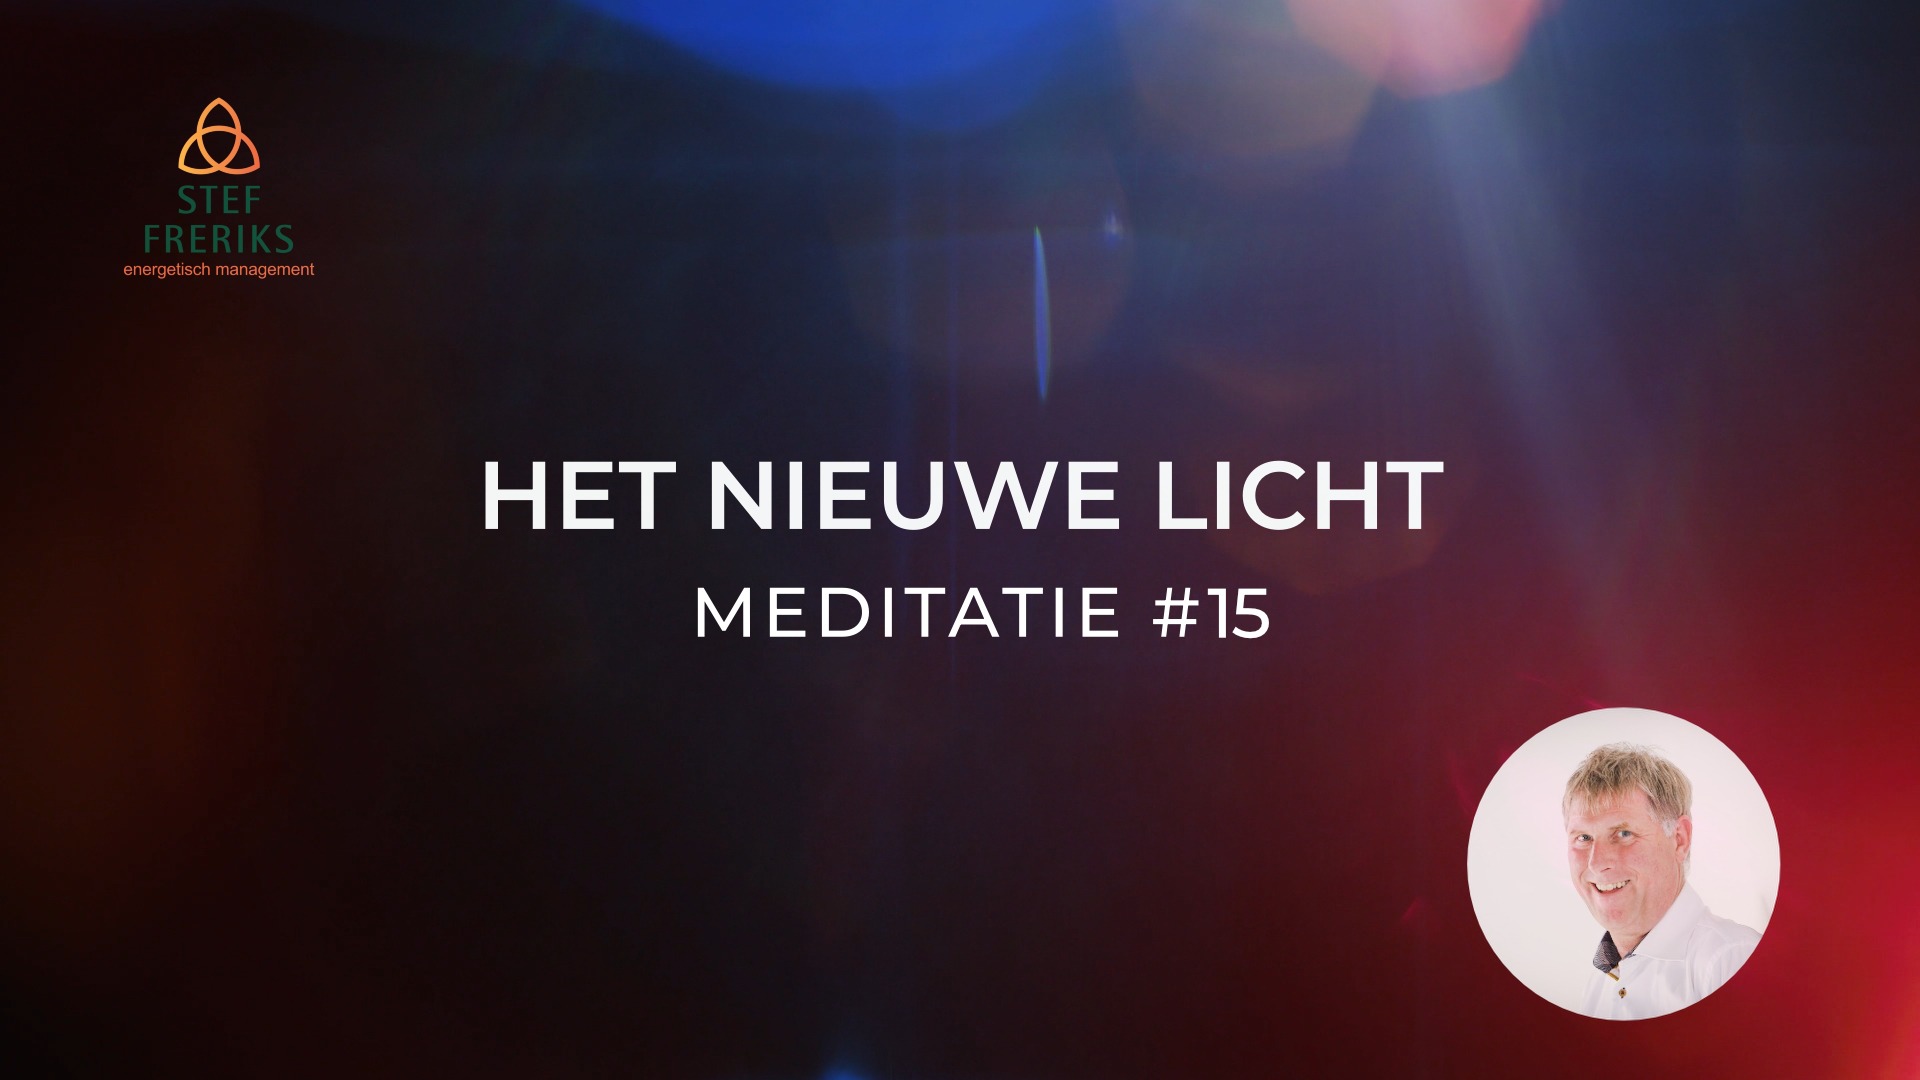 Meditatie #15 uit de serie Het Nieuwe Licht: Eerlijkheid